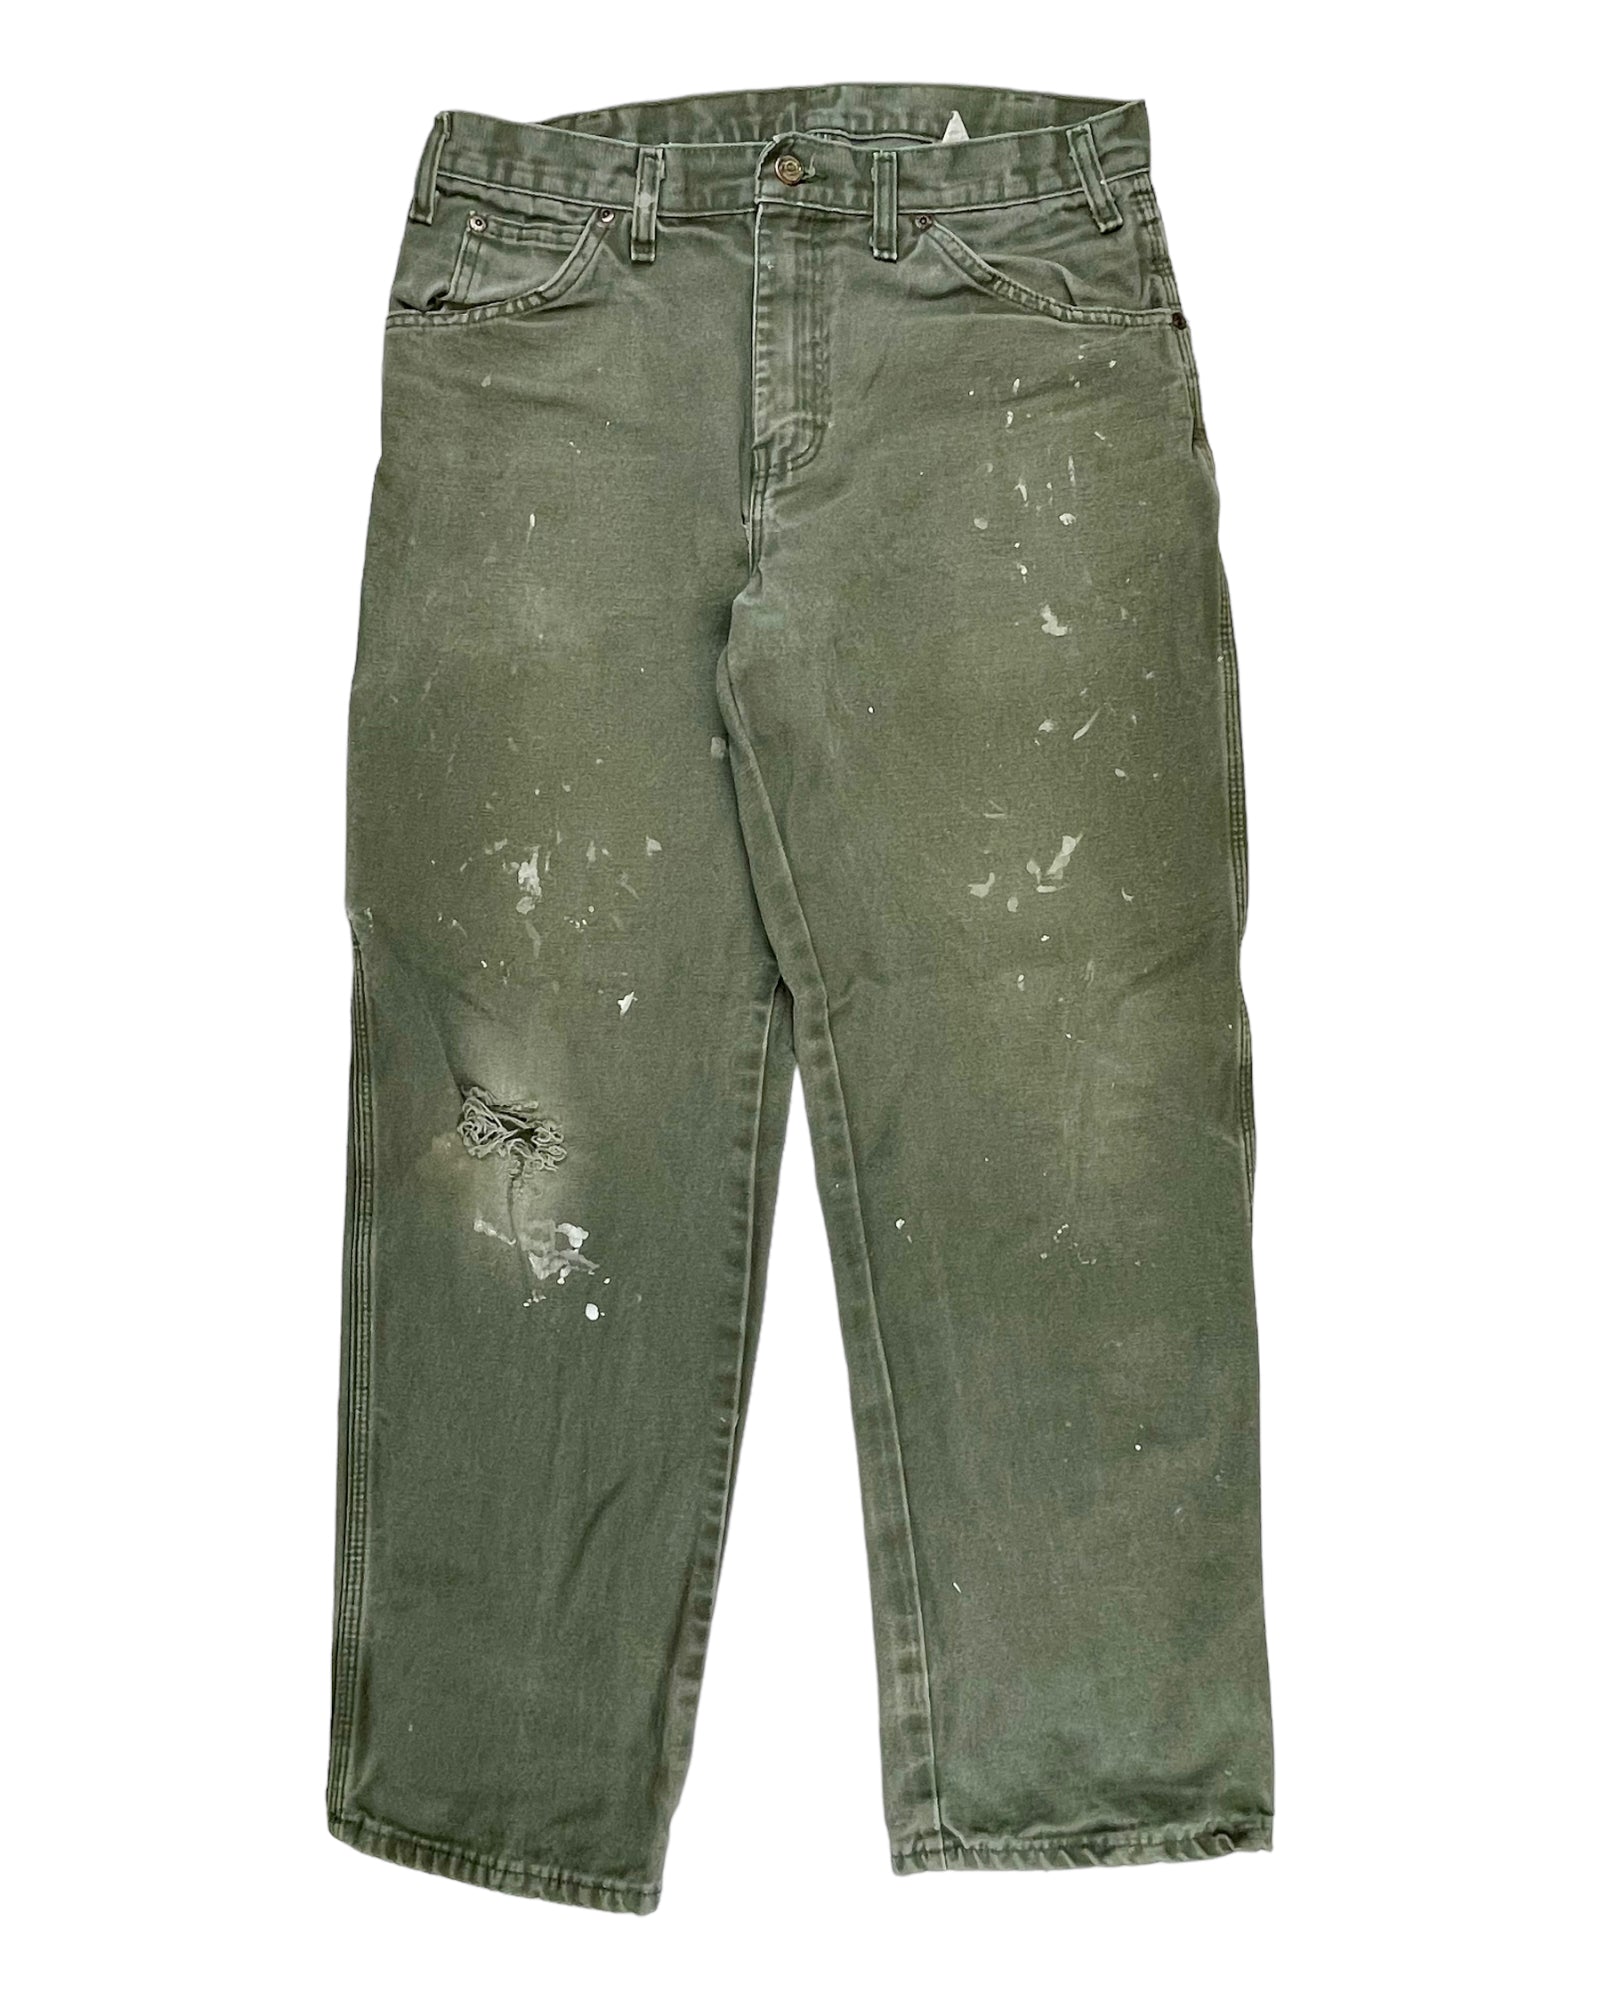 Vintage Dickies Workwear Pants